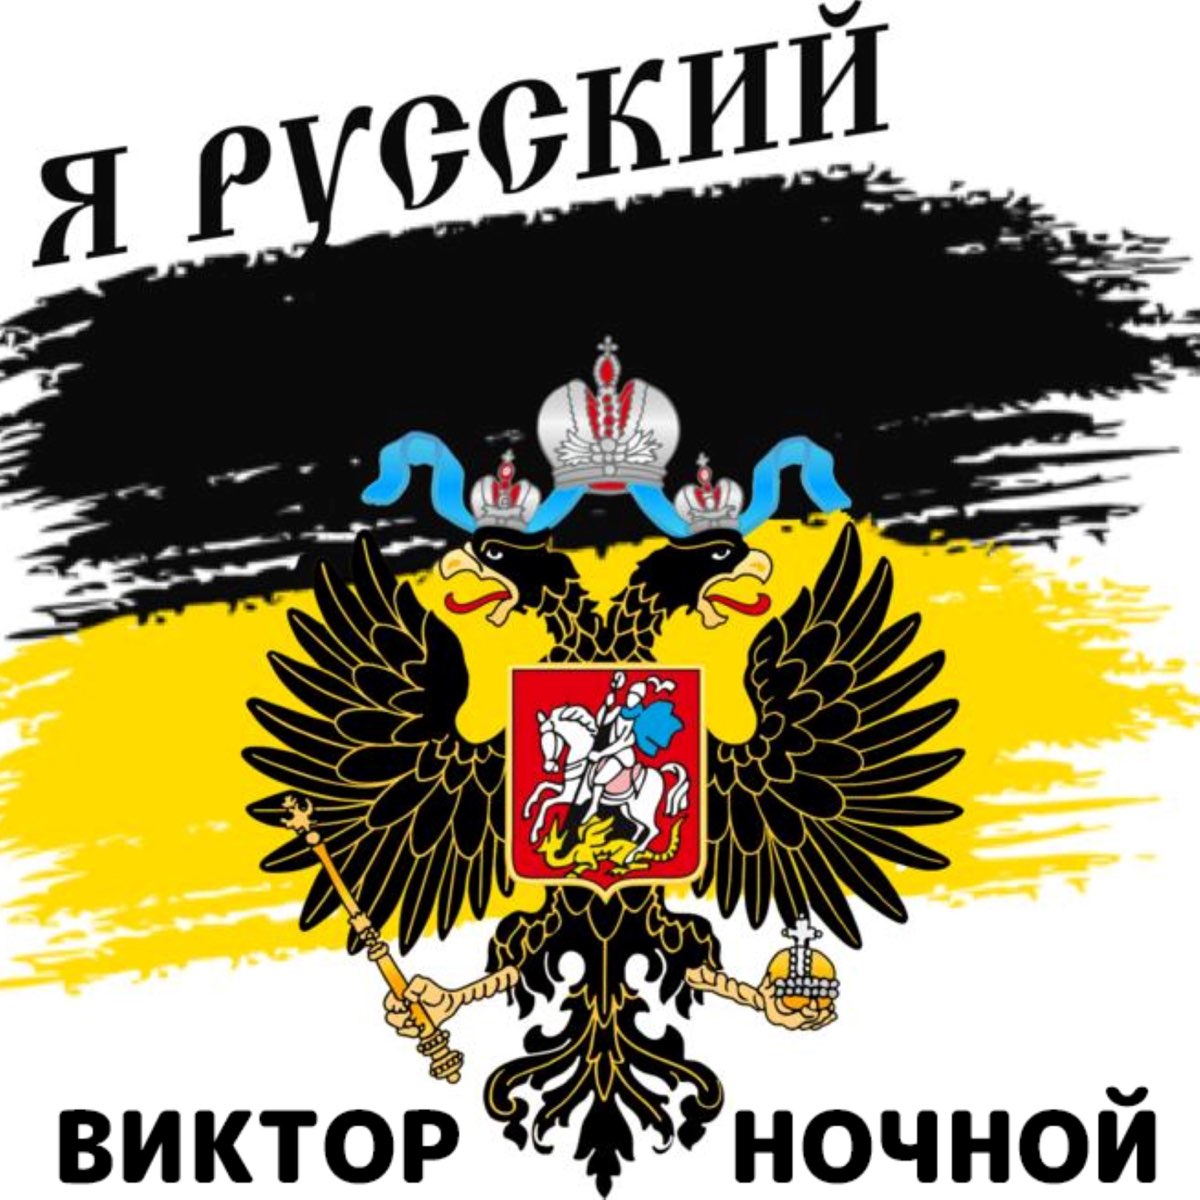 Я русский 1 час. Имперский флаг Российской империи я русский. Я русский. Надпись я русский. Россия для русских.